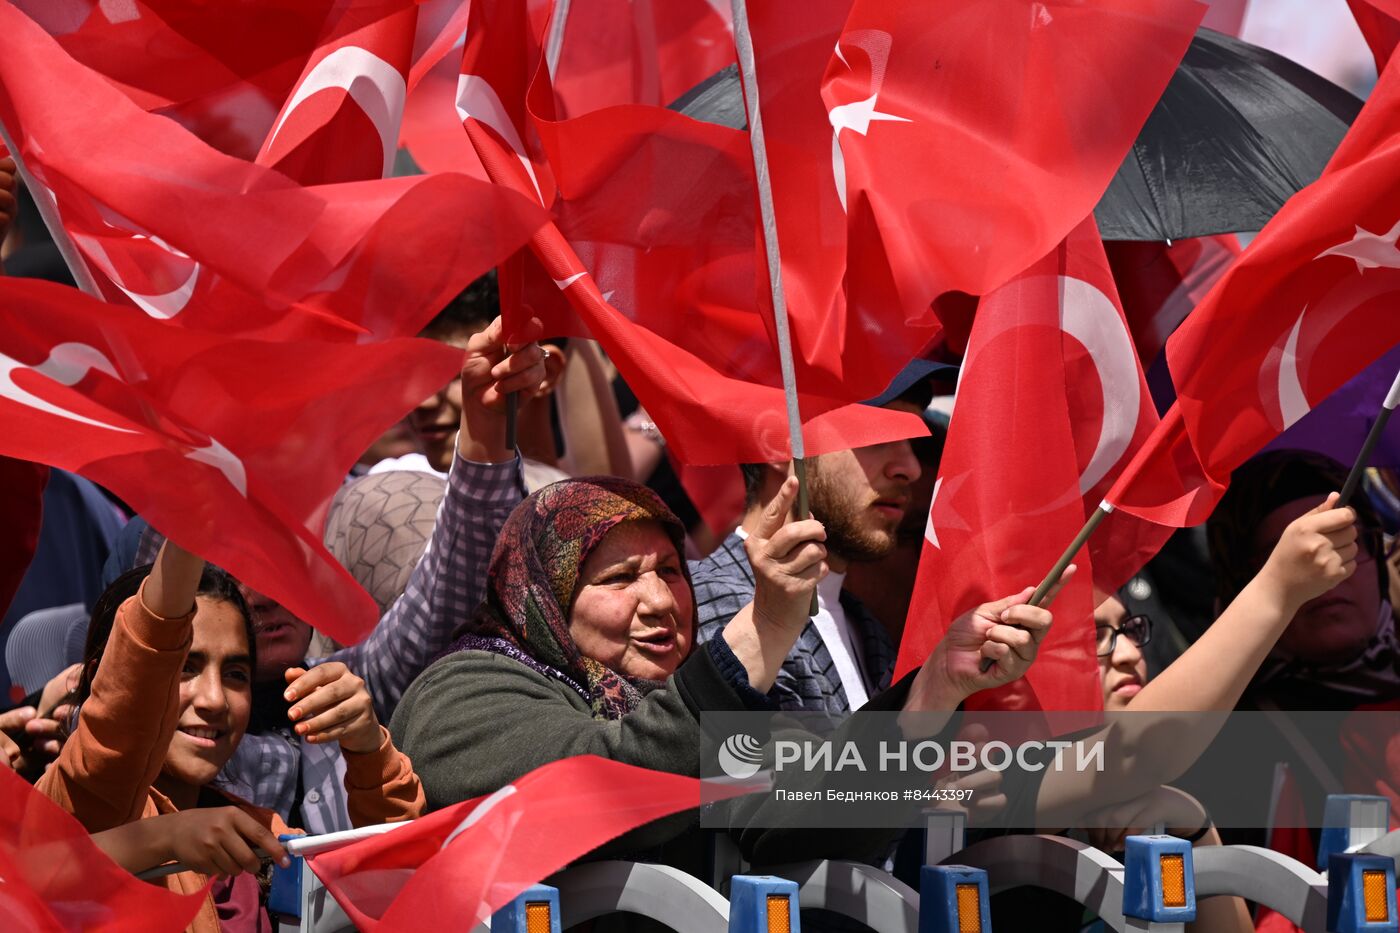 Предвыборные мероприятия президента Турции Р. Эрдогана